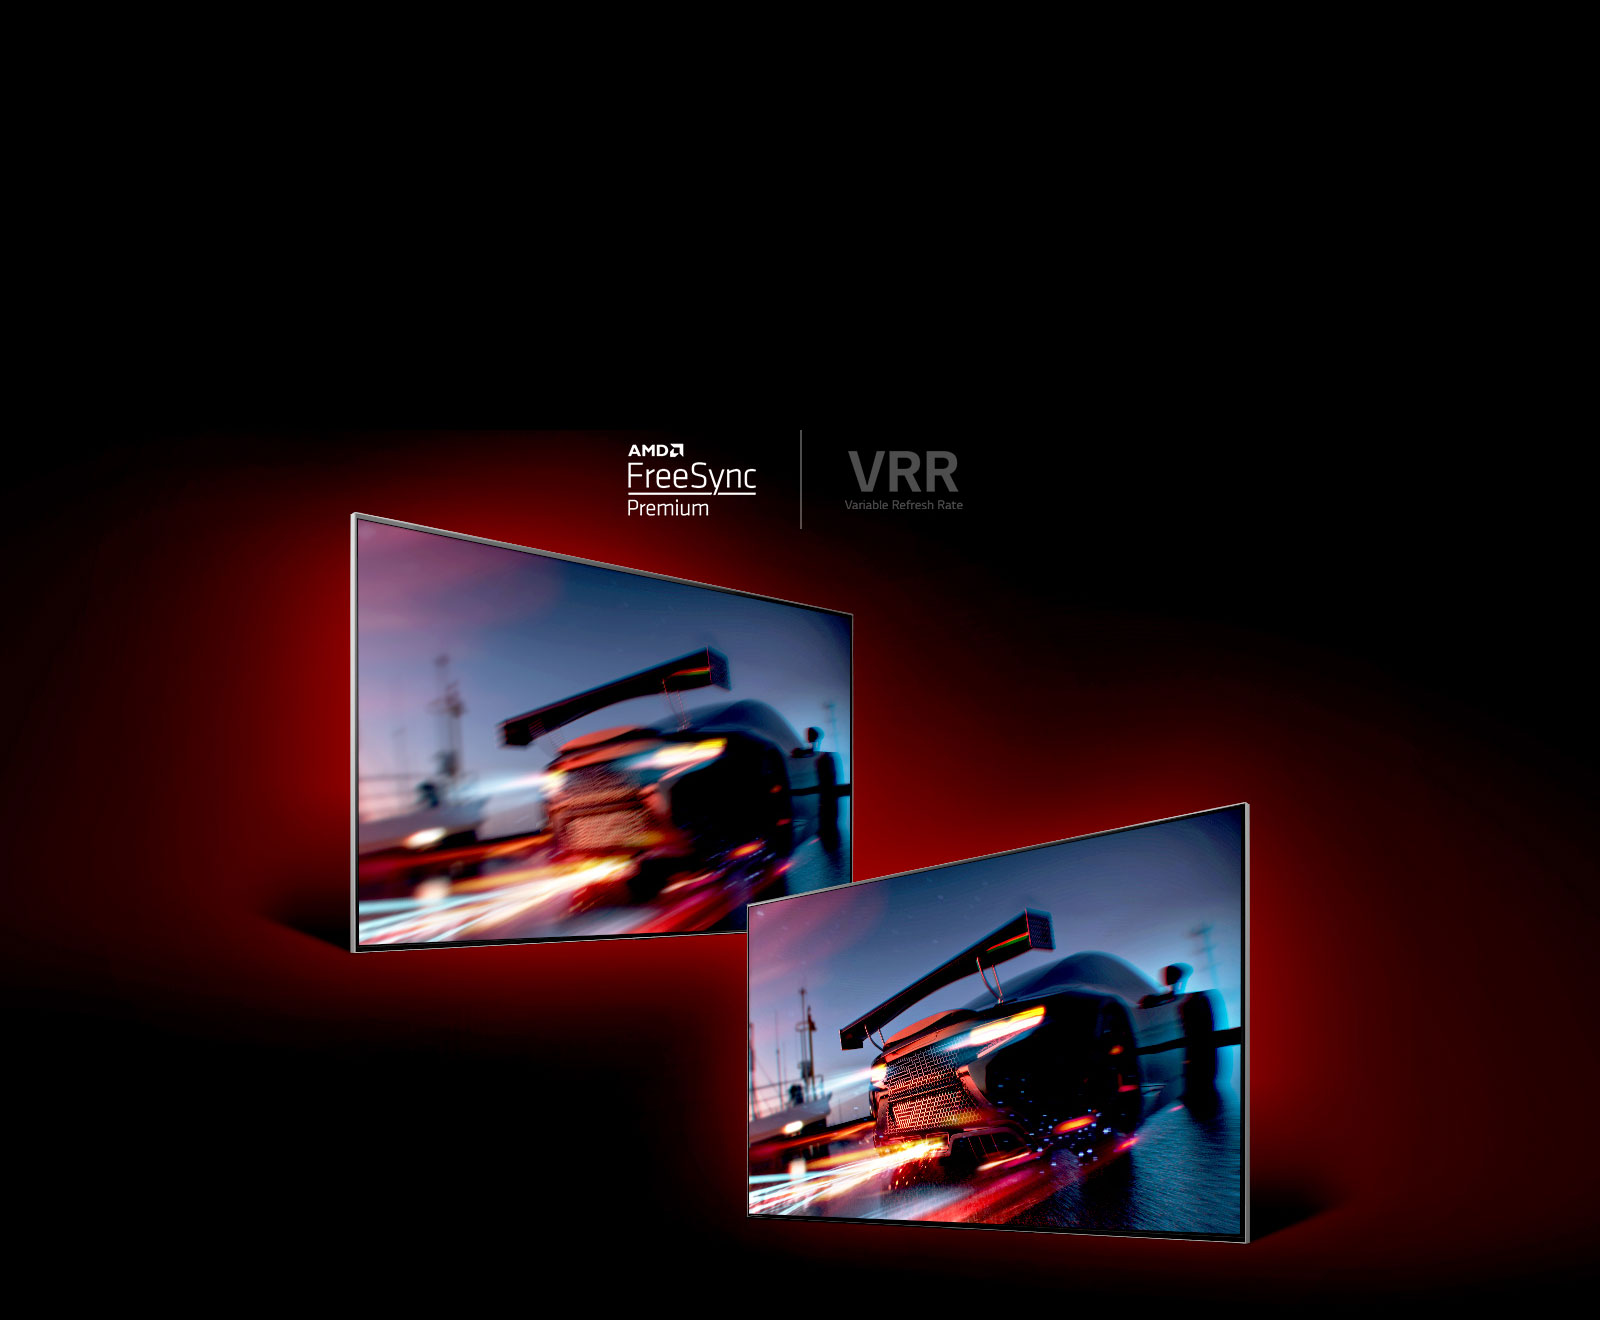 Є два телевізори віч -на -віч. Ліворуч телевізор проектує швидкий гоночний автомобіль, який, здається, досить розмита, поки праворуч, телевізор демонструє швидкий, але дуже чіткий гоночний автомобіль